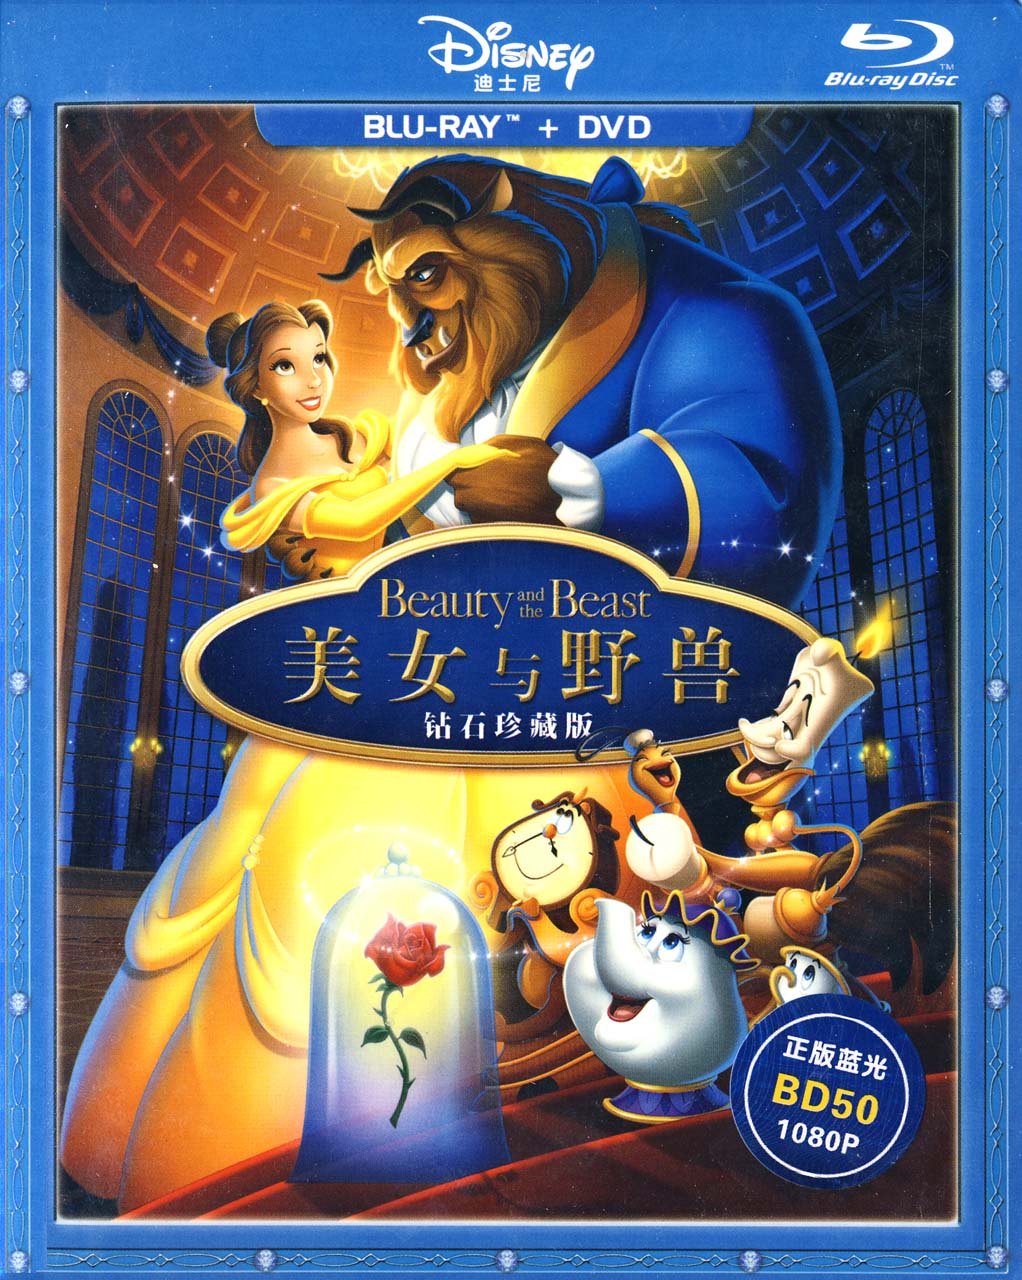 美女与野兽 钻石珍藏版 原生国粤语繁简中字 公映版+特别加长版二合一 含画中画 Beauty and the Beast 1991 CHN Blu-Ray+DVD AVC DTS-HD MA 7 1-tiandiyiti@HDSky[48.18 GB]-1.jpg